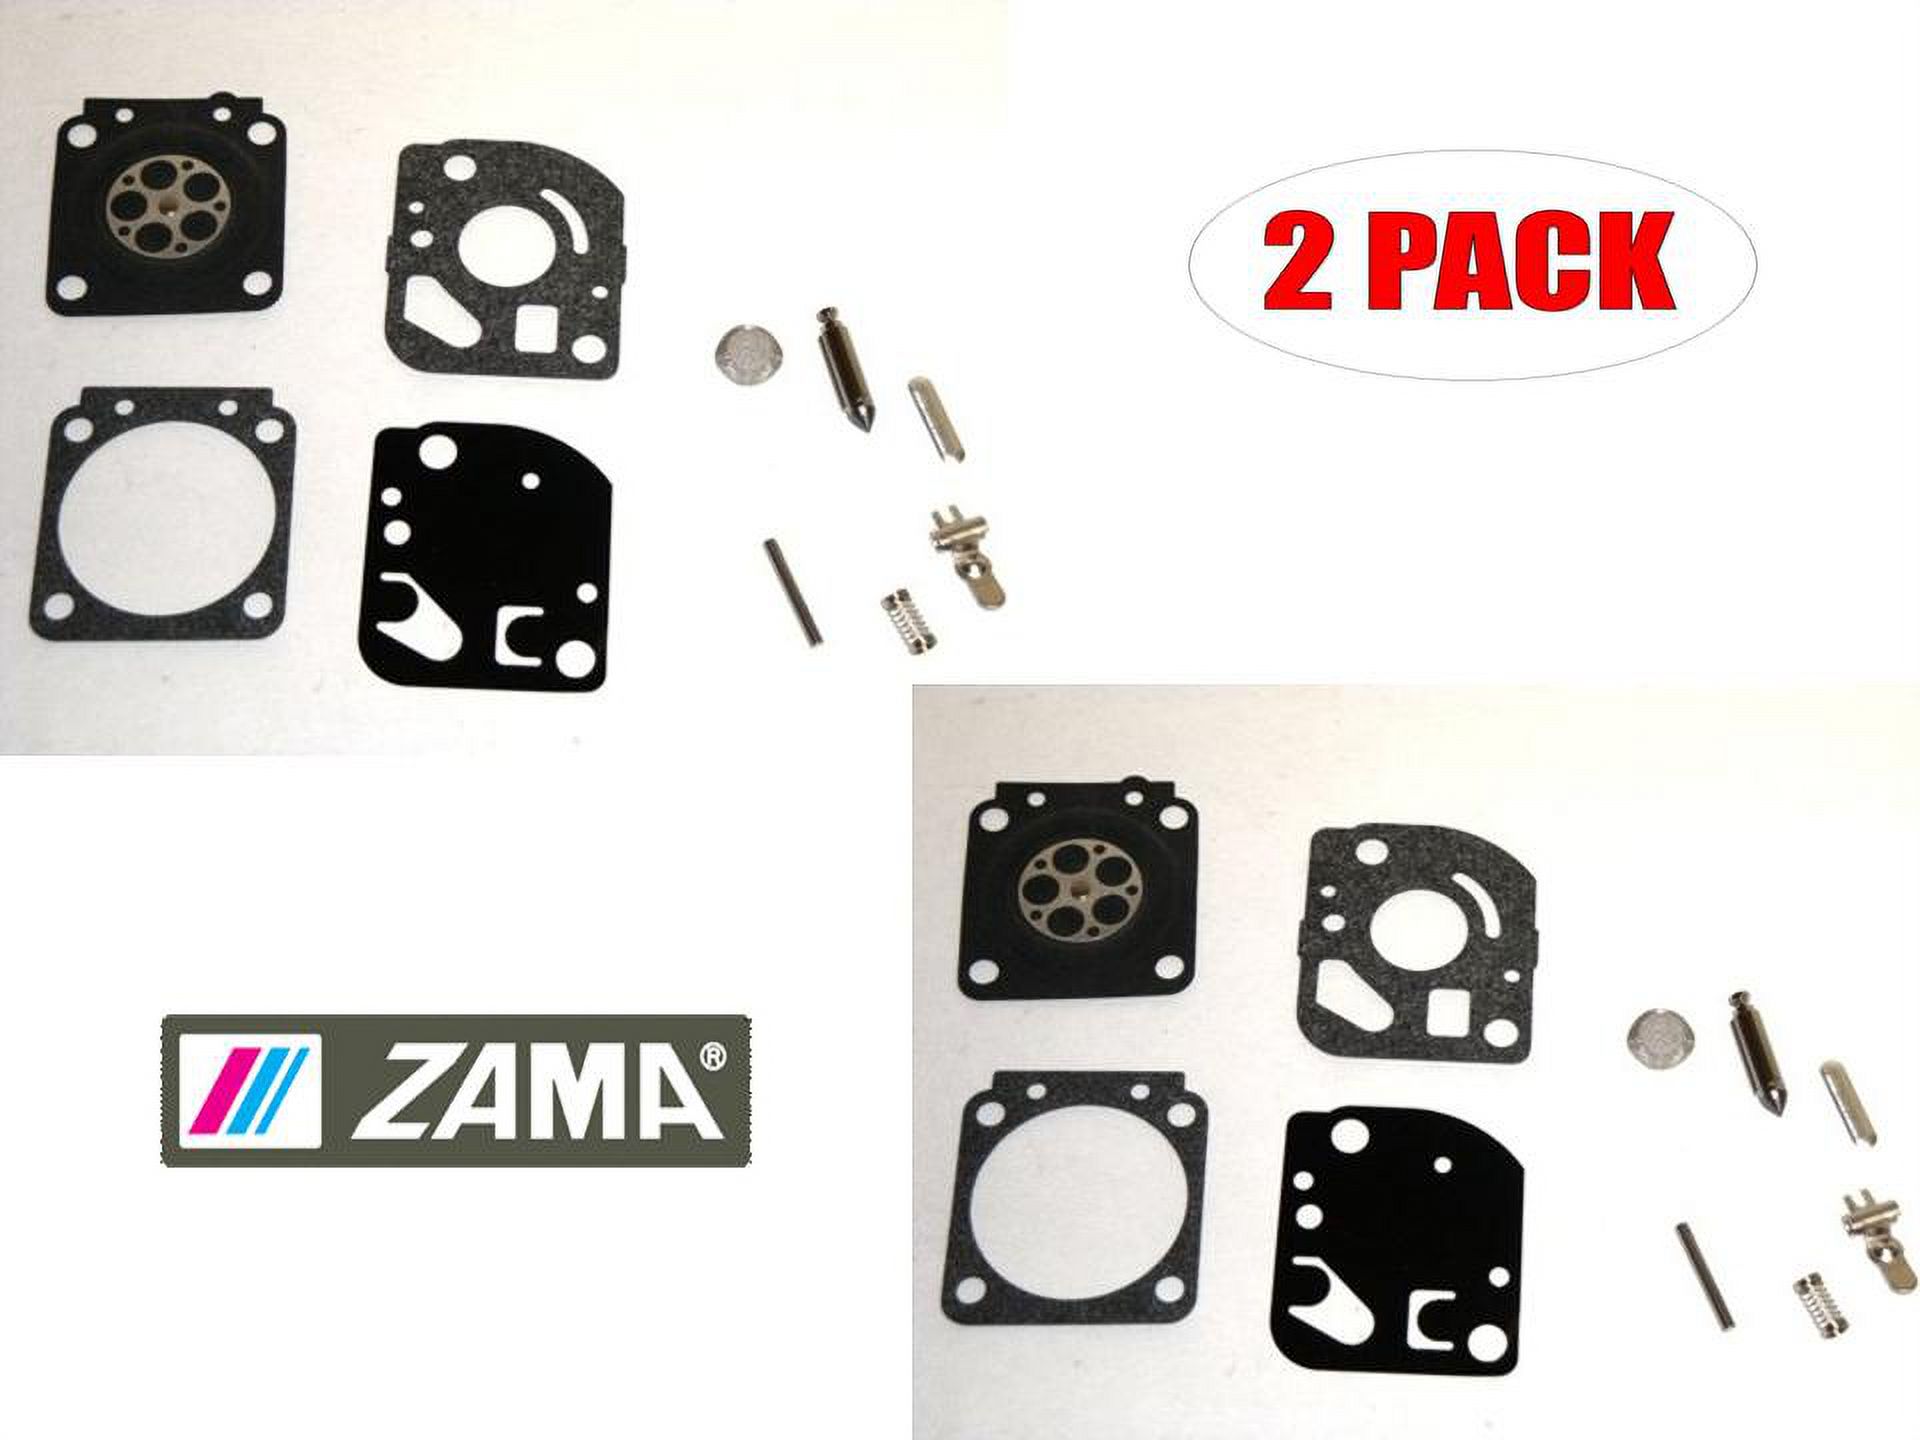 Zama 2 Pack RB-62 Carburetor Repair Kits # RB-62-2PK - image 1 of 2